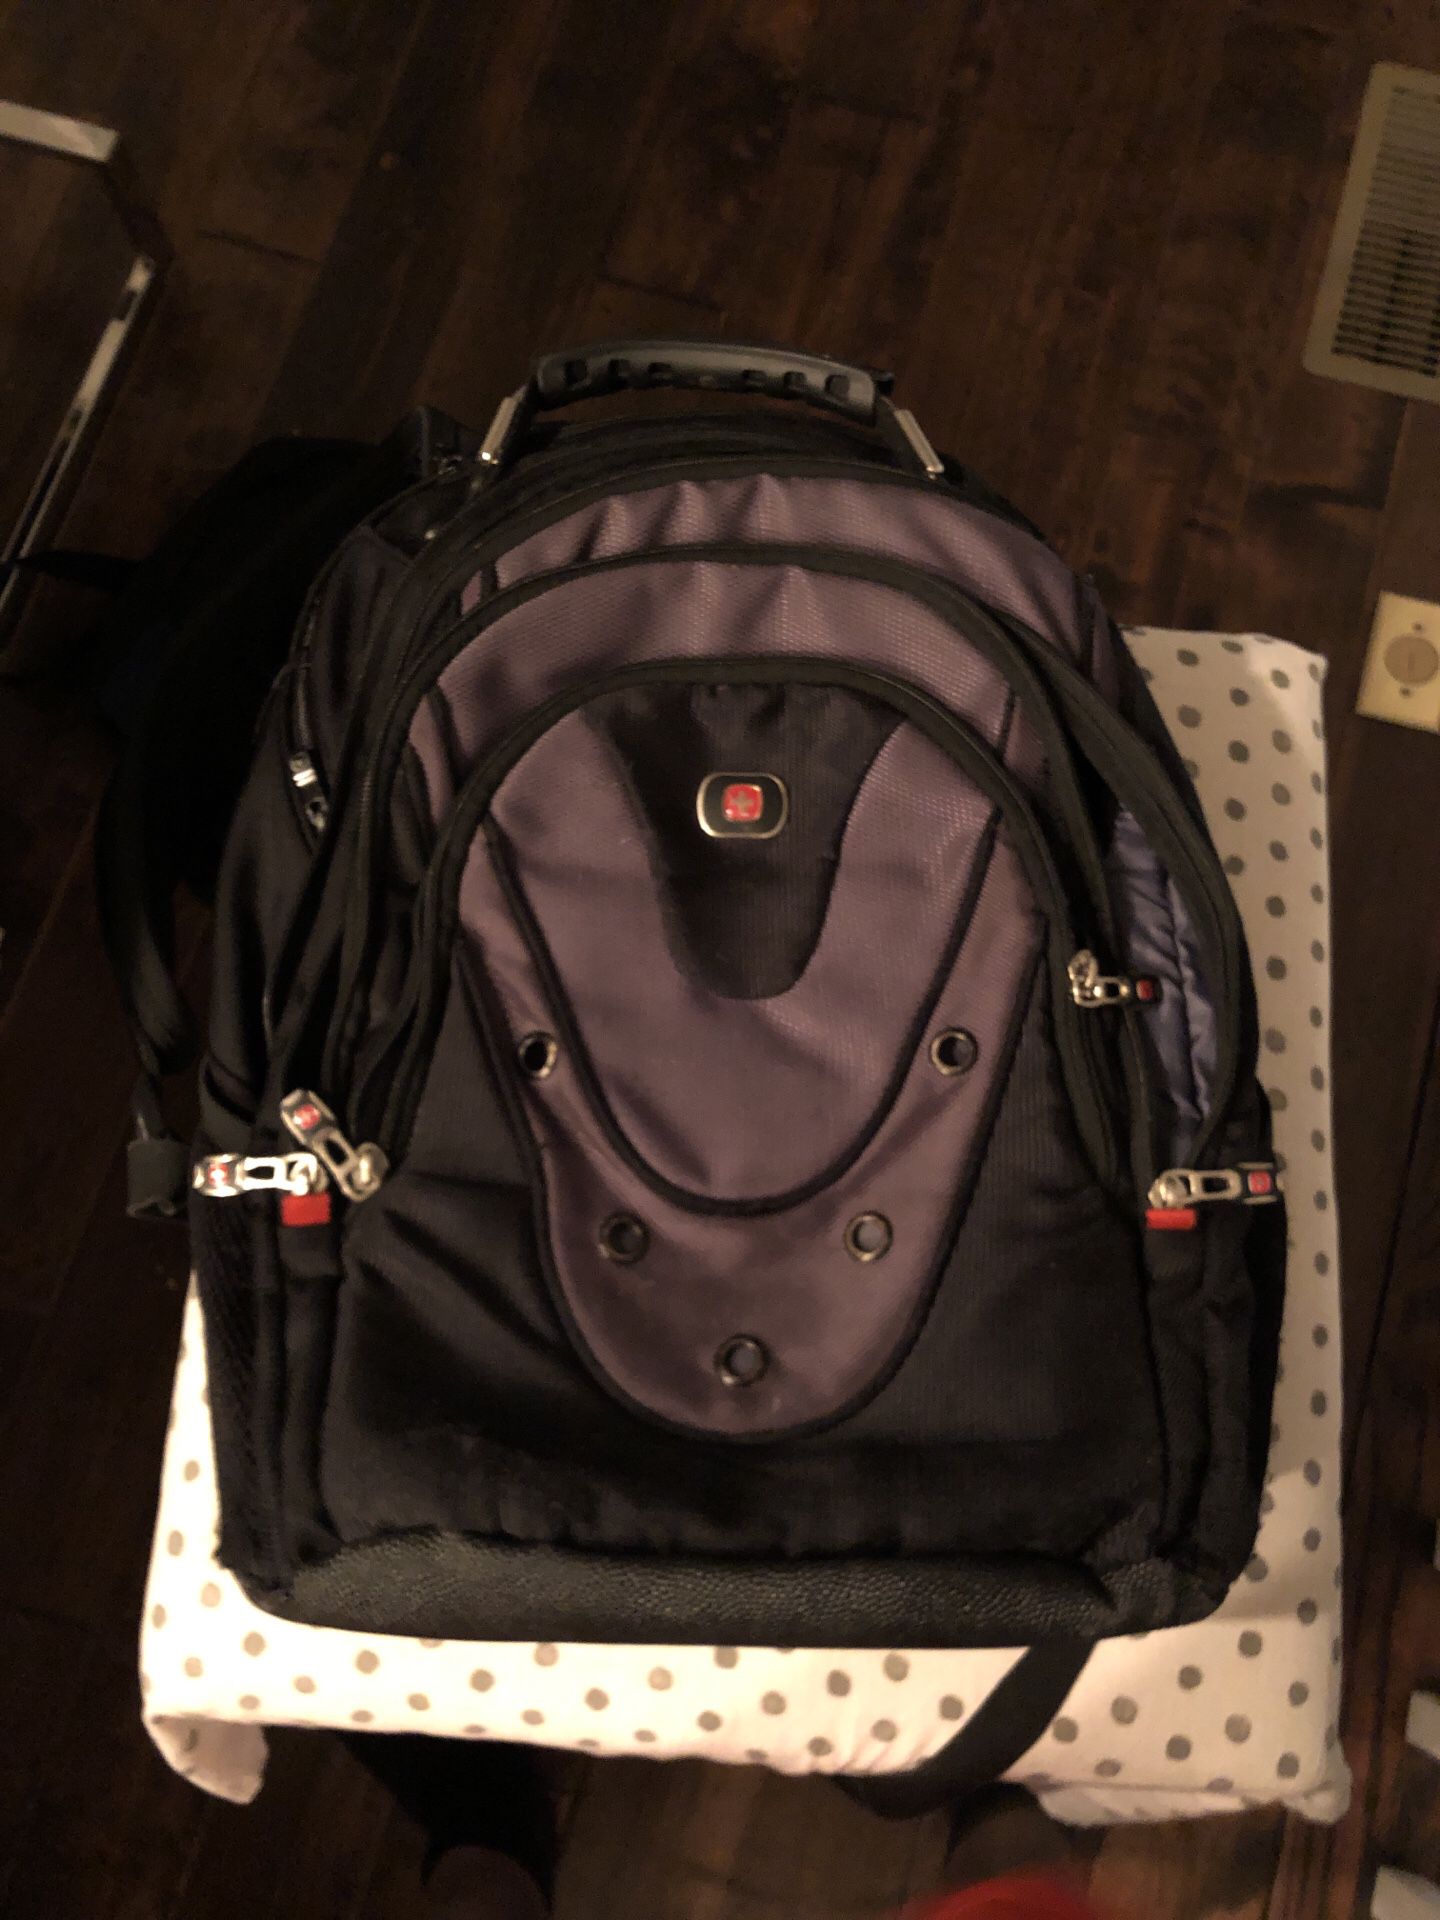 SwissGear backpack